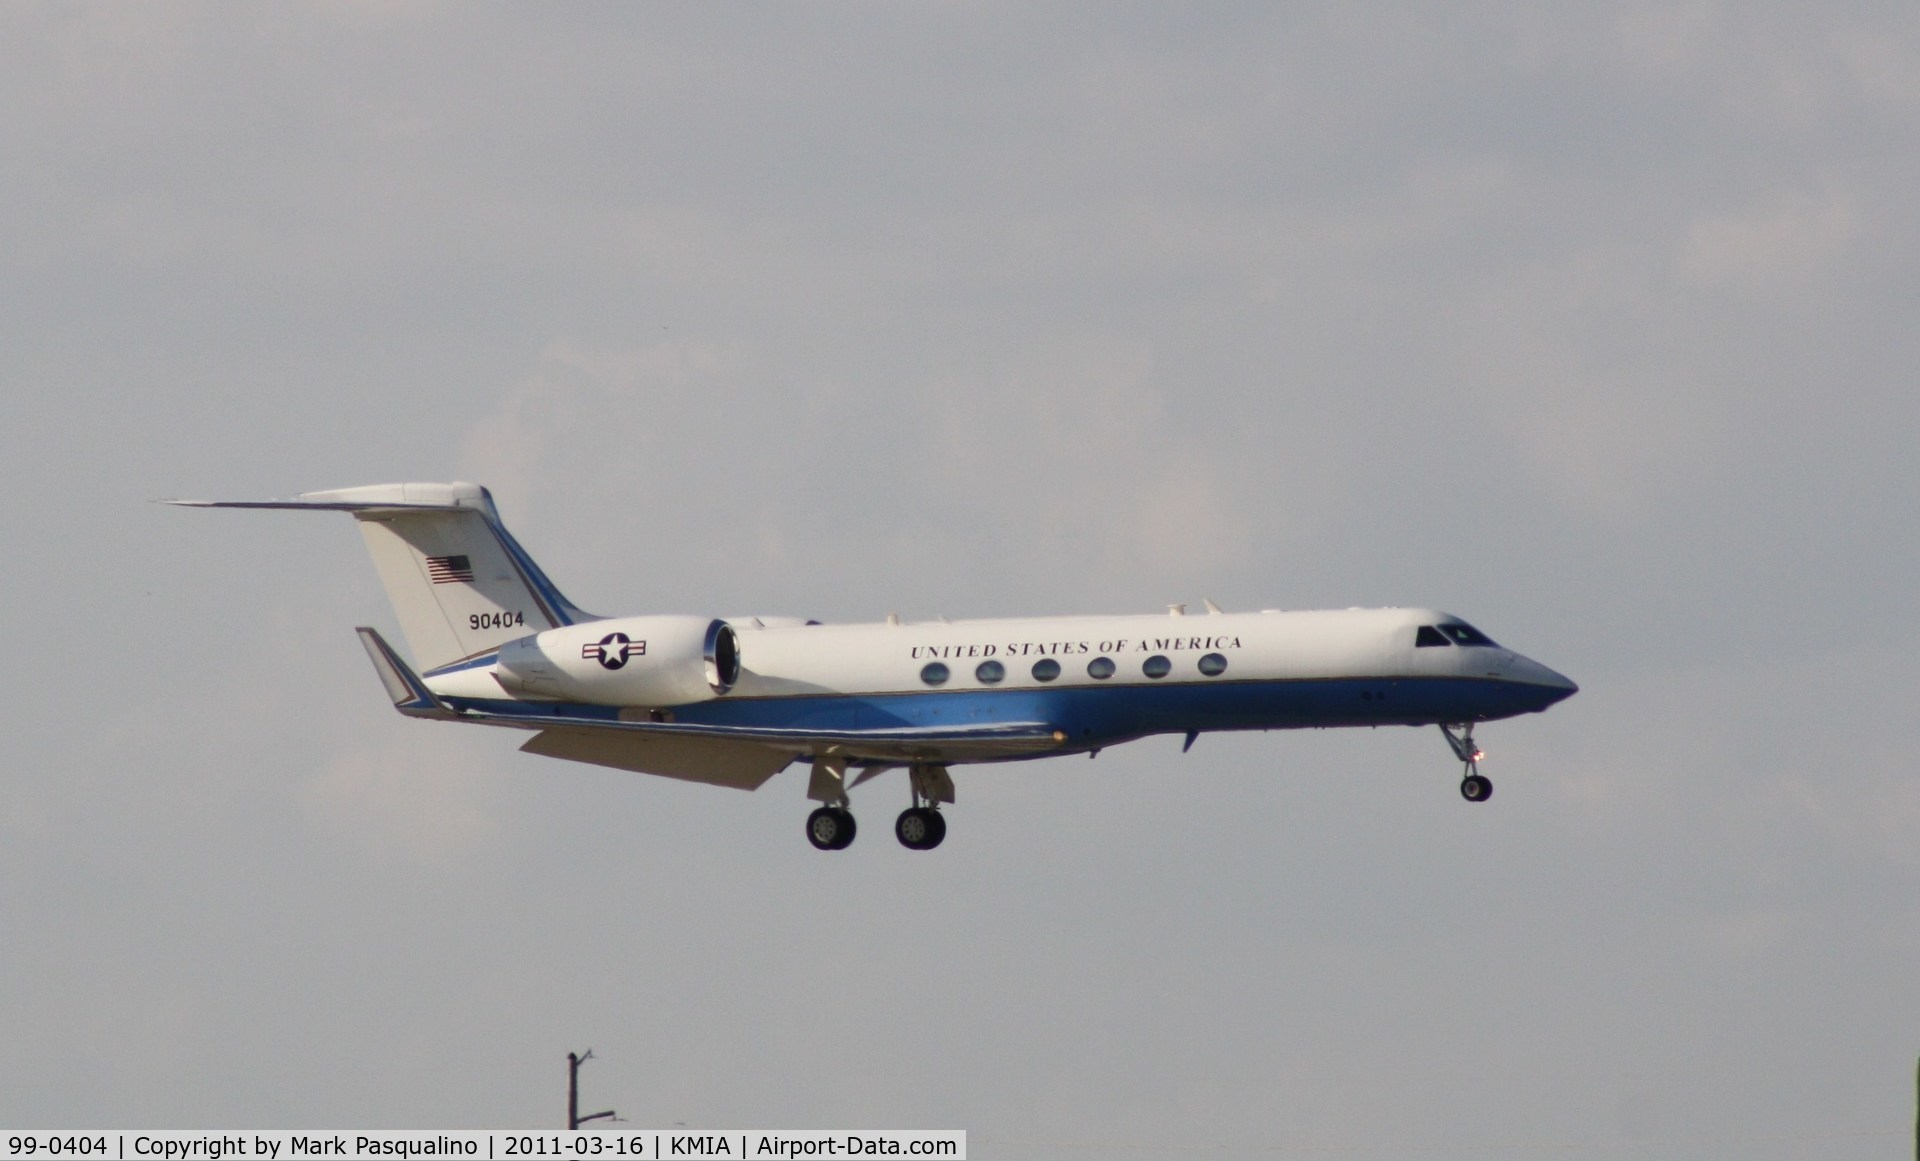 99-0404, 1999 Gulfstream Aerospace C-37A (Gulfstream V) C/N 590, Gulfstream C-37A